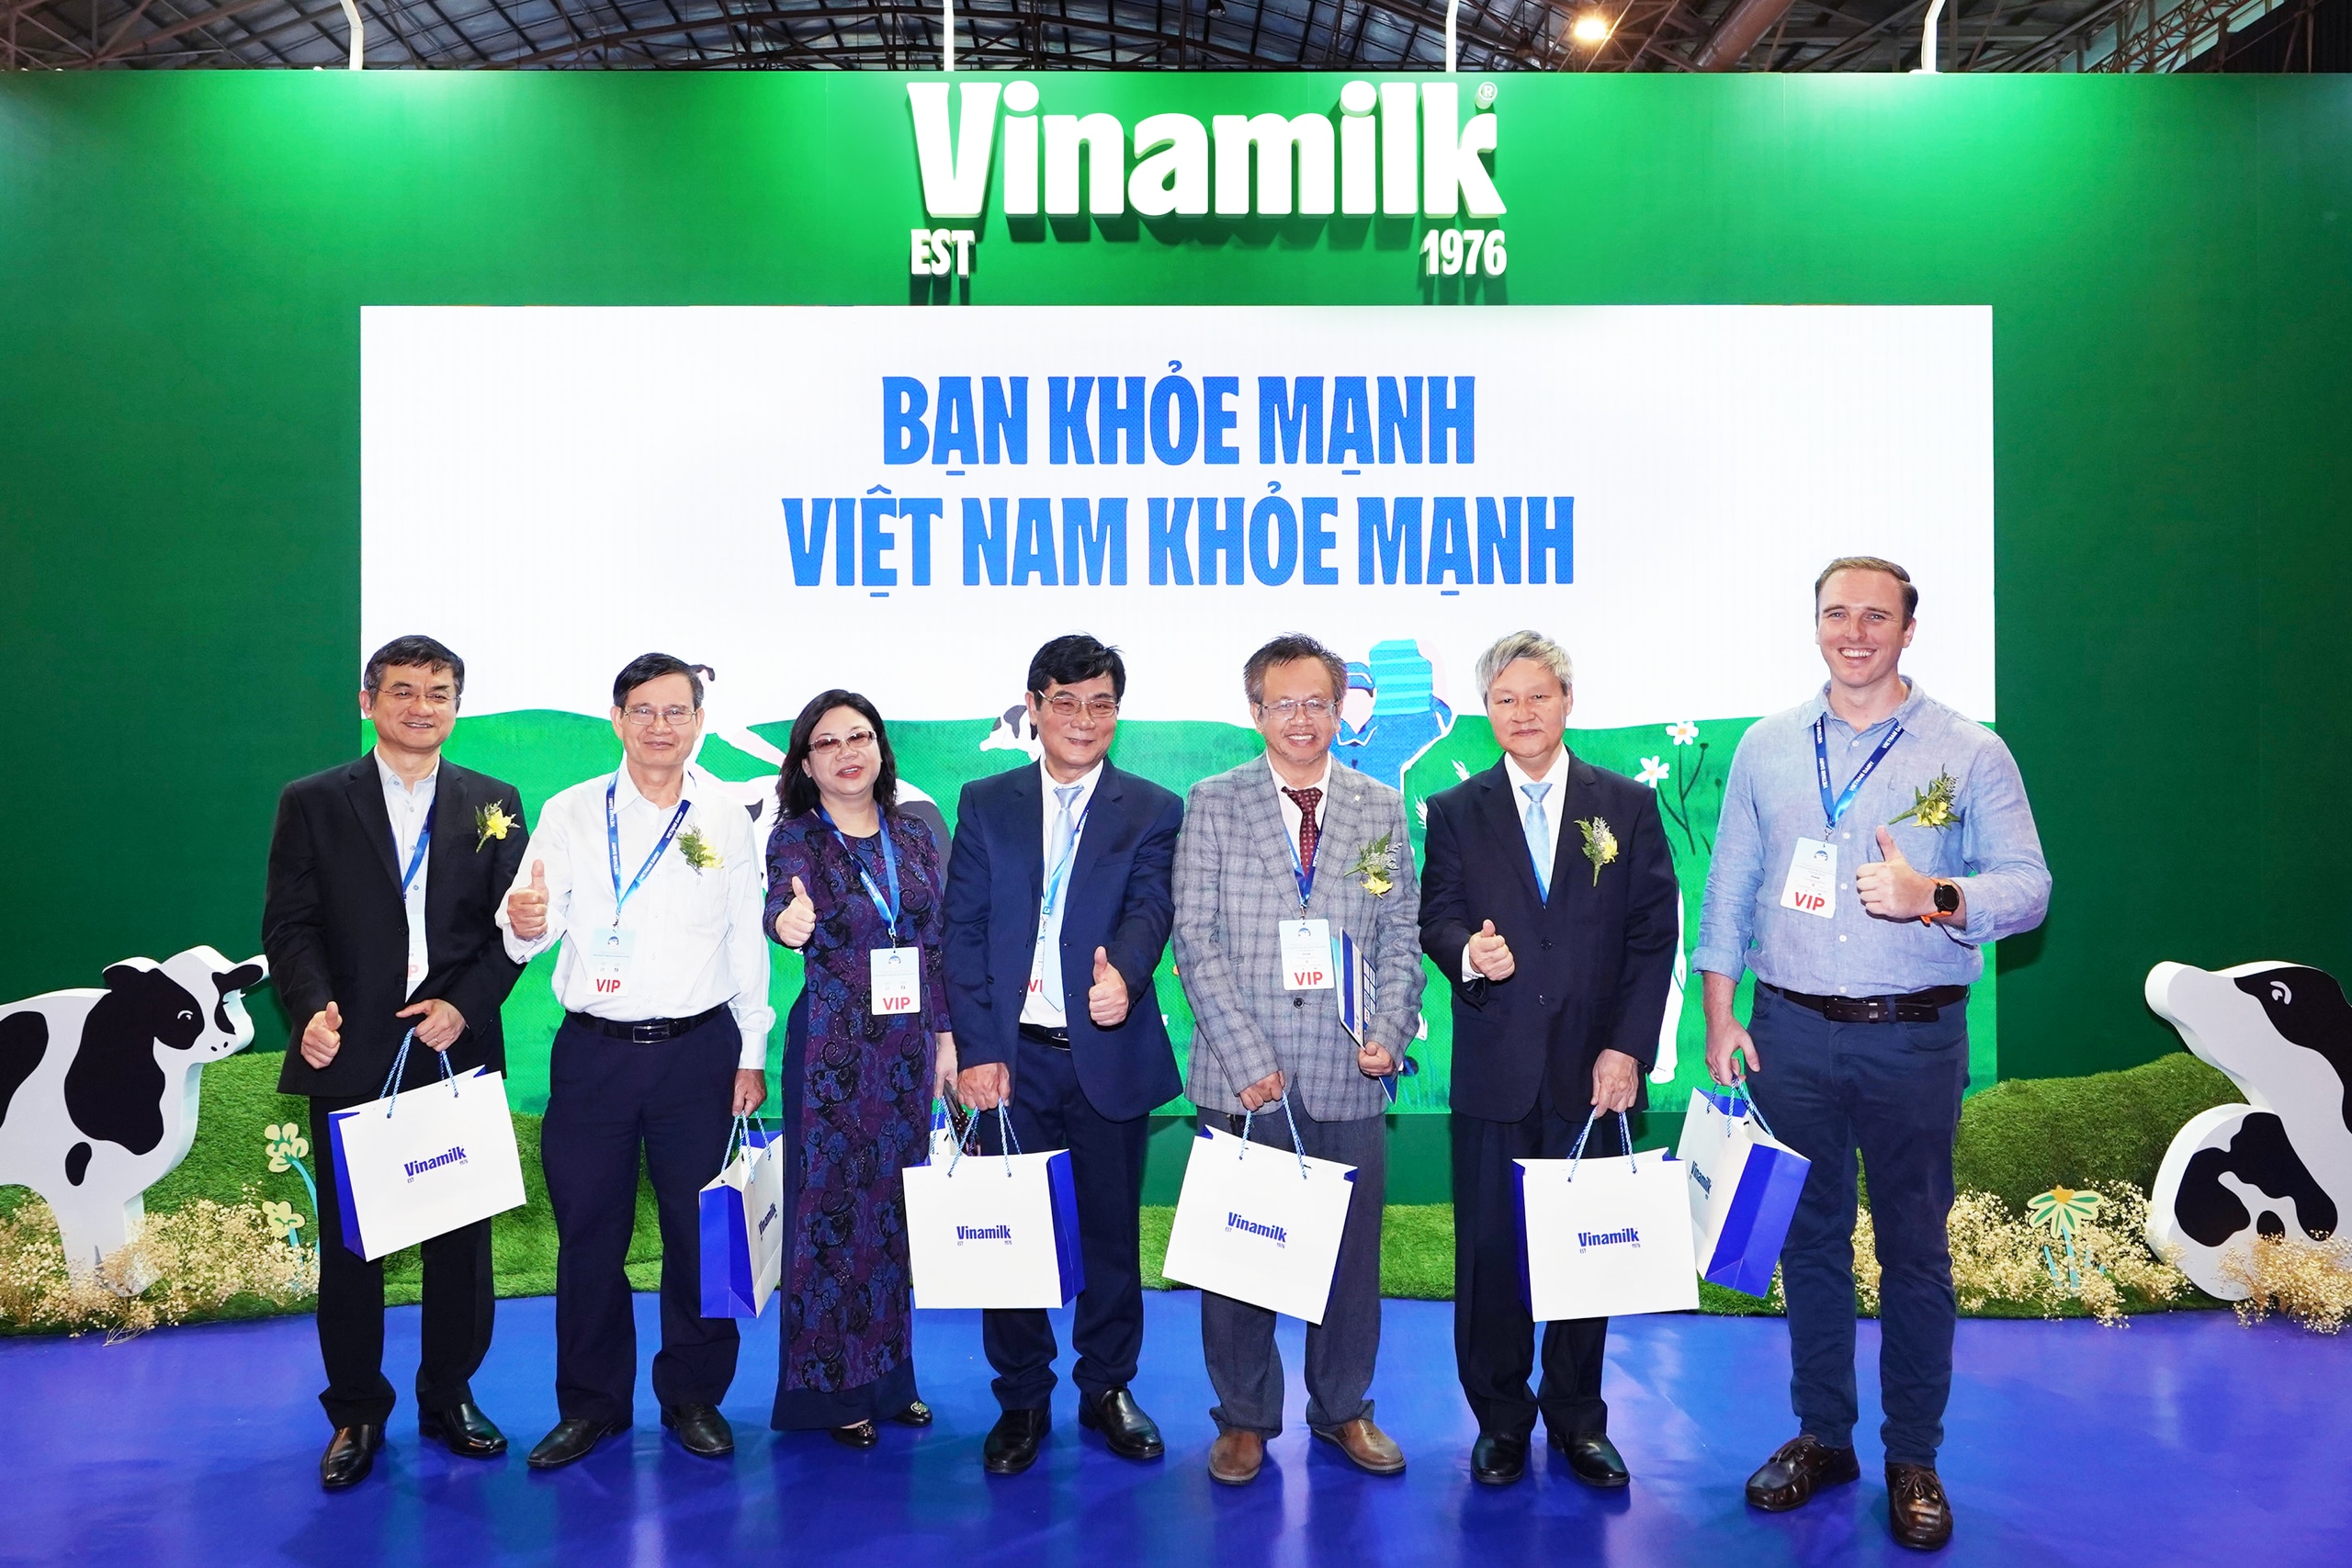 Sức hút của Vinamilk tại Triển lãm quốc tế chuyên ngành sữa- Ảnh 16.